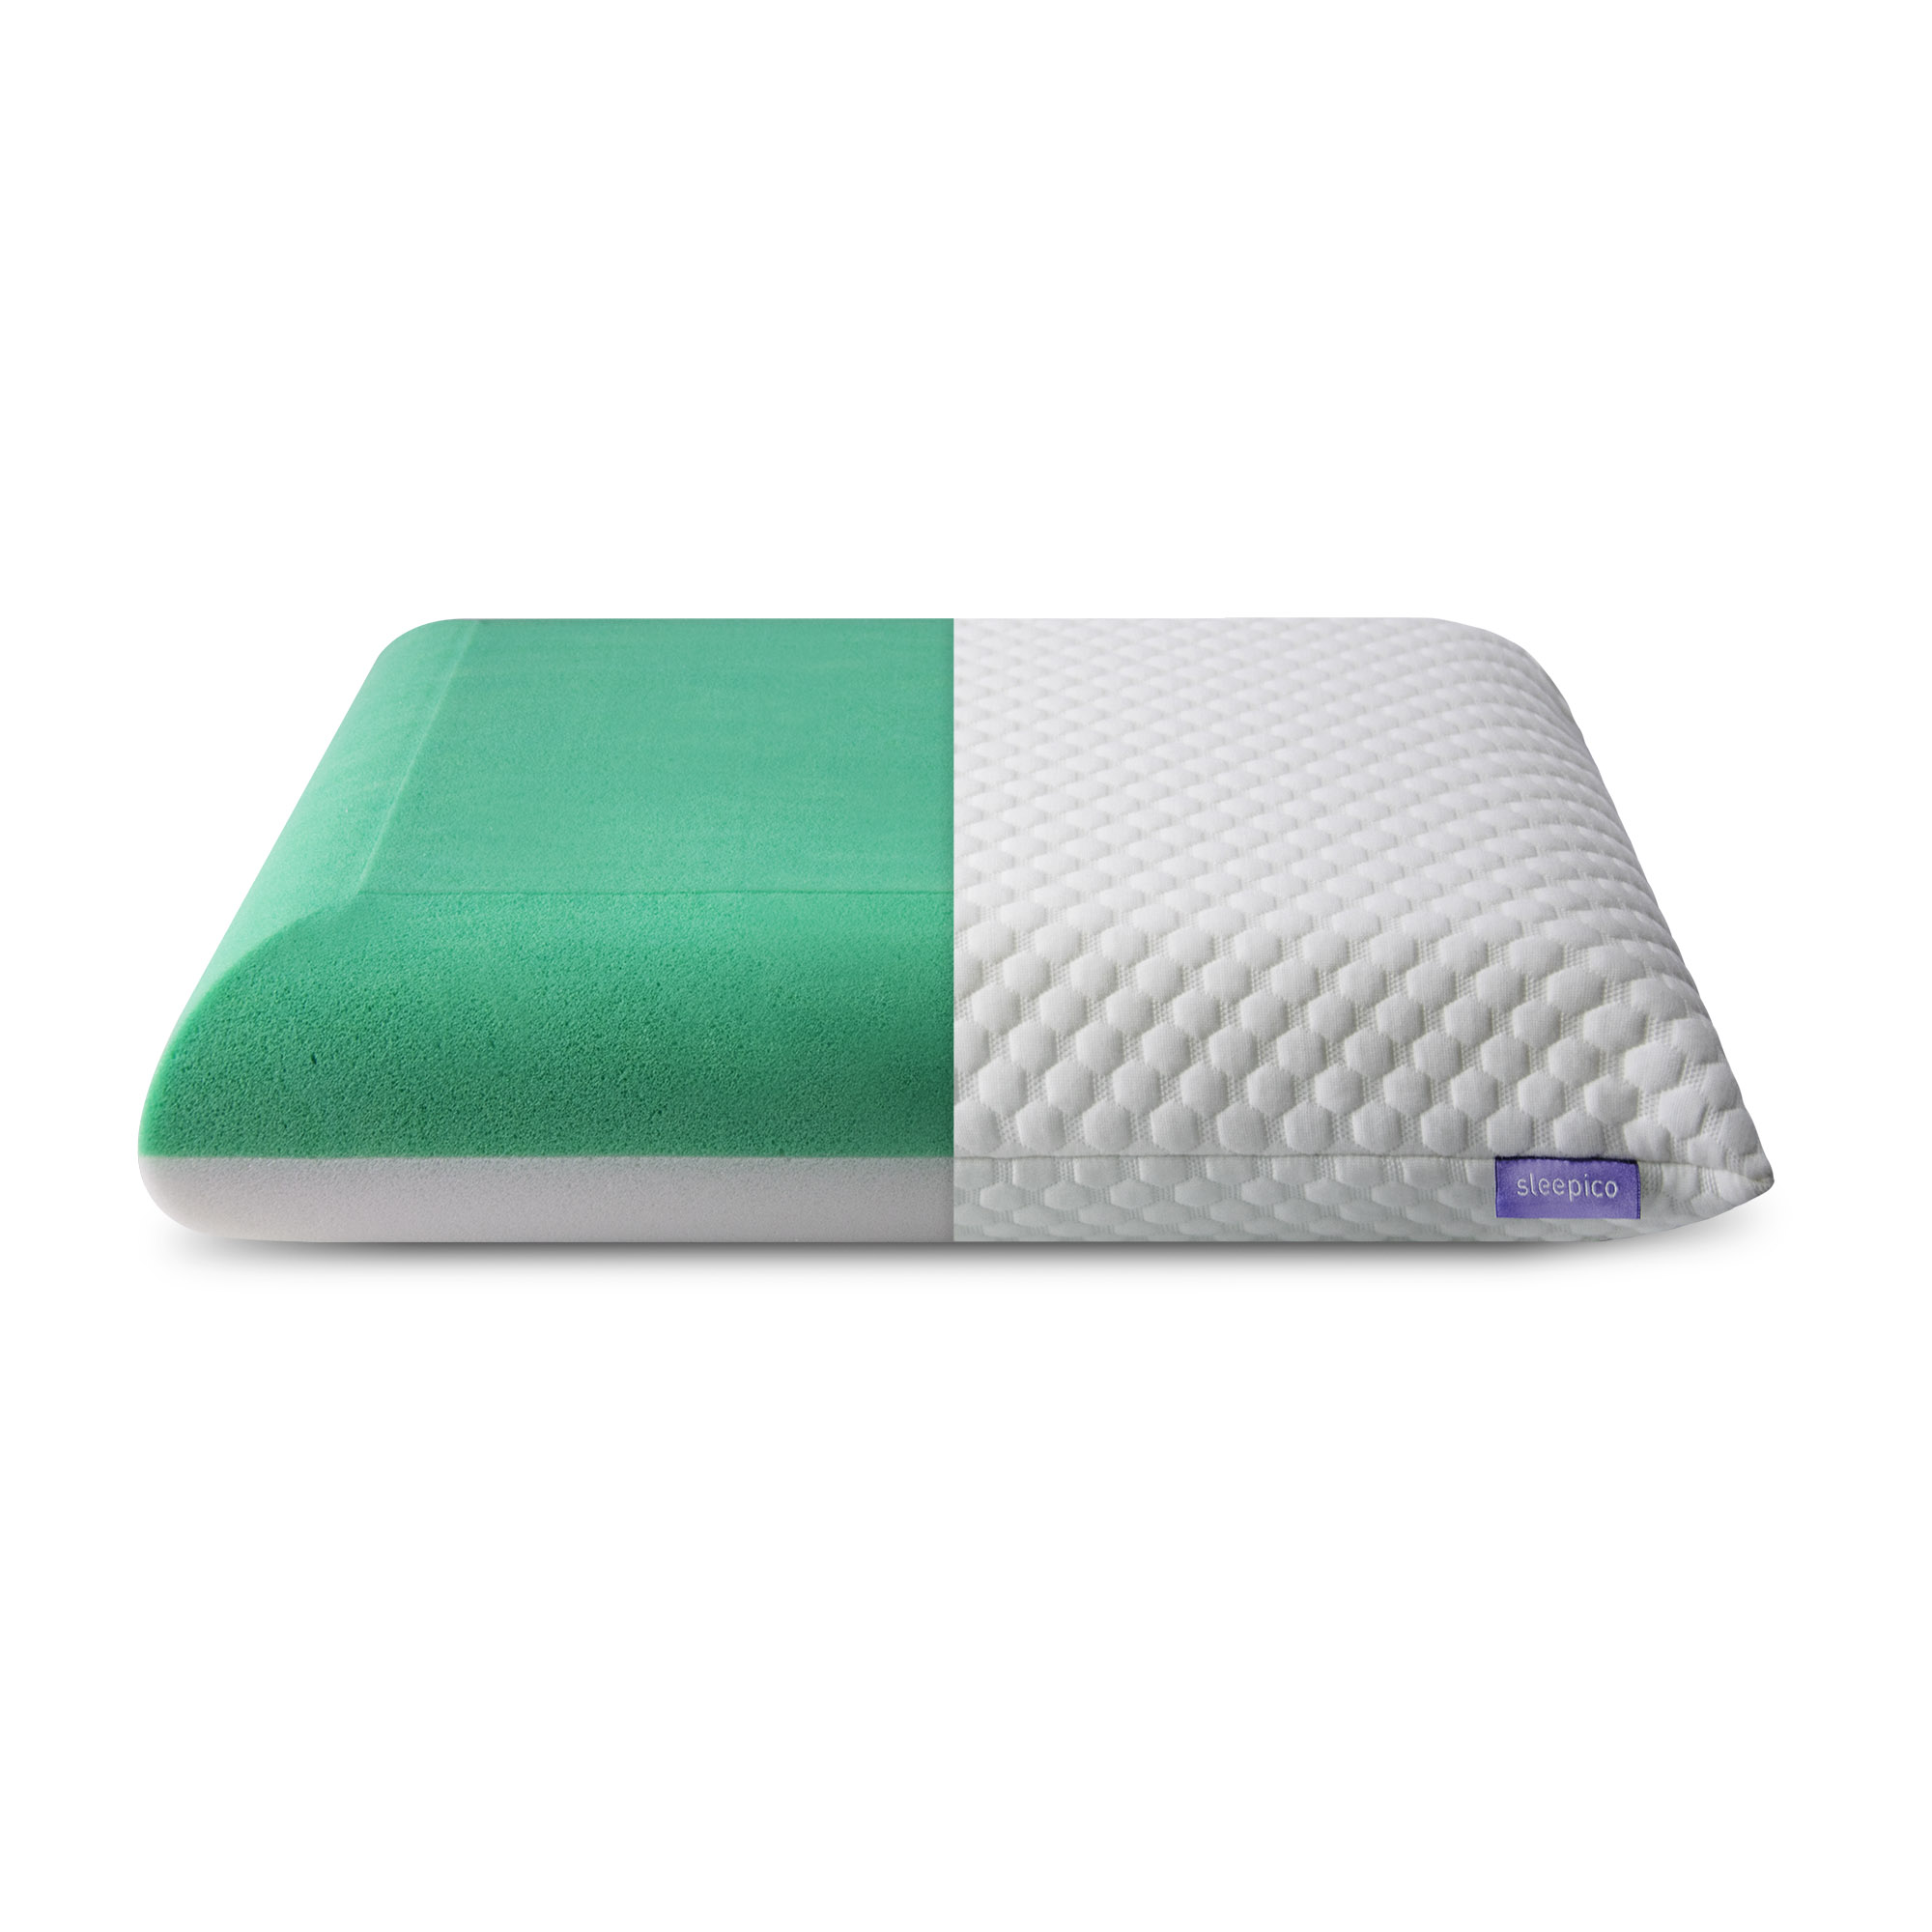 Ортопедическая подушка с эффектом памяти и разной жесткостью сторон Sleepico Memory Mix